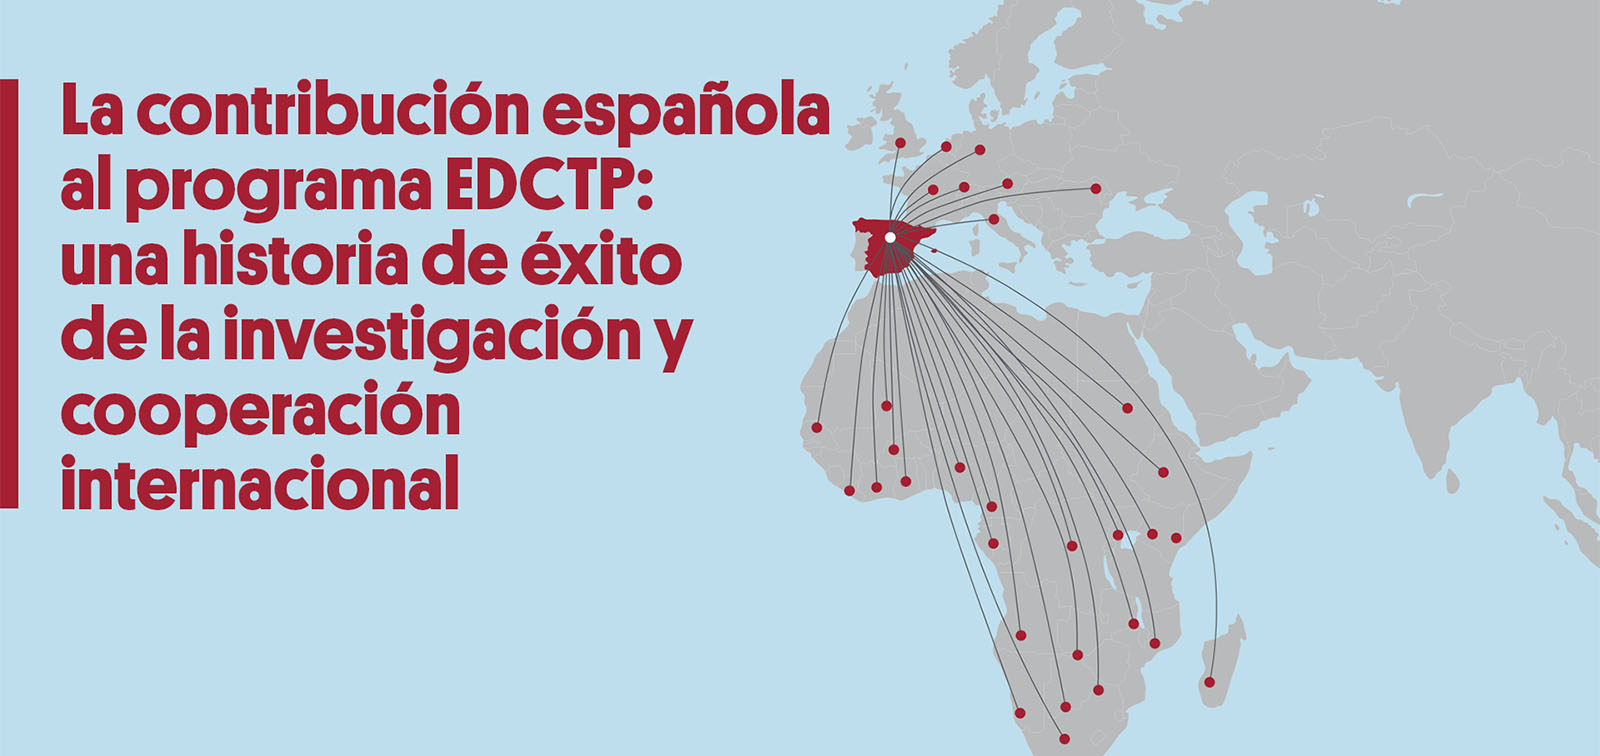 La contribució espanyola al programa EDCTP